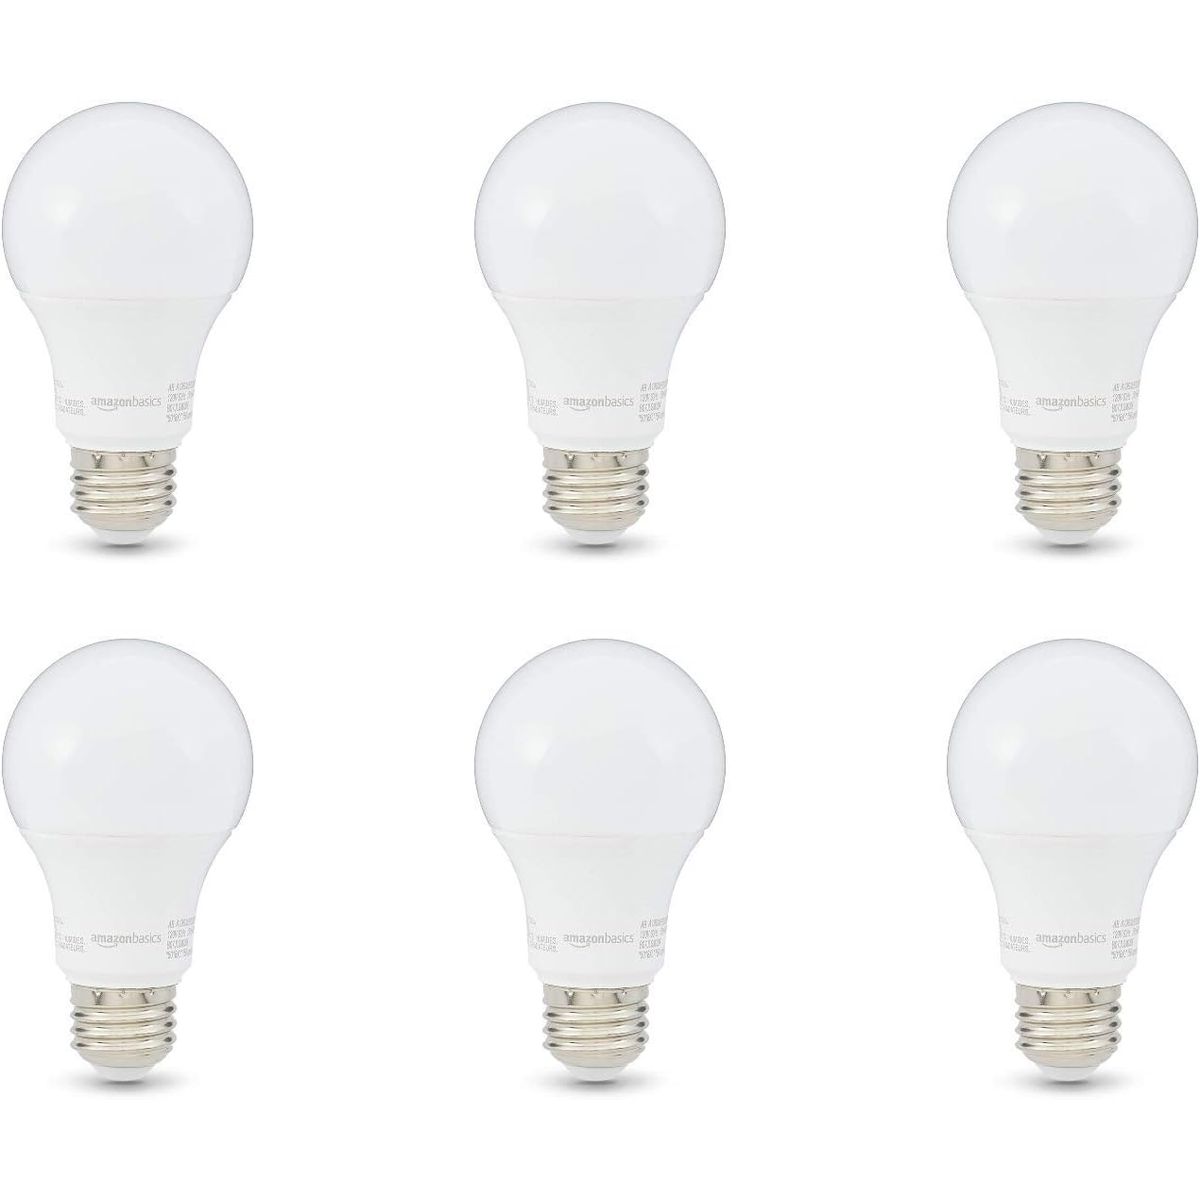 Photos - Light Bulb Amazon Basics A19 LED  - 10,000 Hour Lifetime  - 6(2 to 16-Pack)